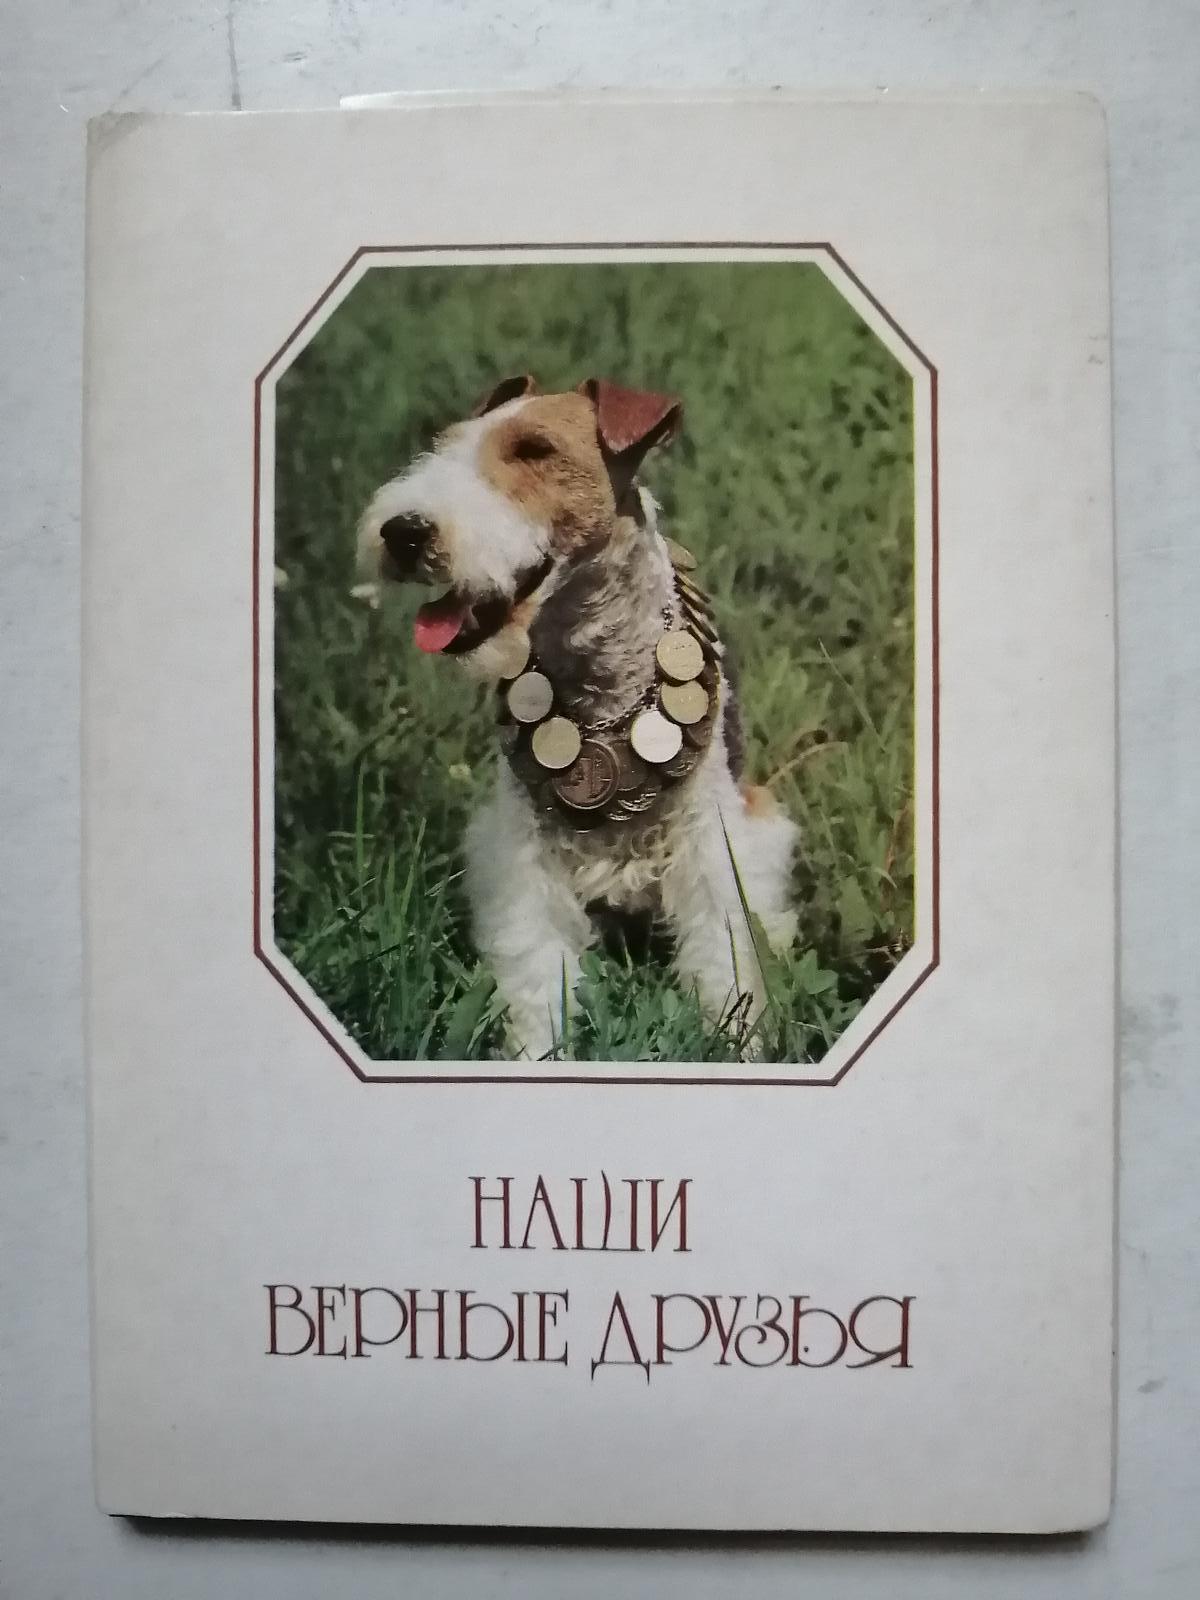 Naši věrní přátelé  - 20 pohlednic kompletní soubor - rusky   PSI  - Starožitnosti a umenie